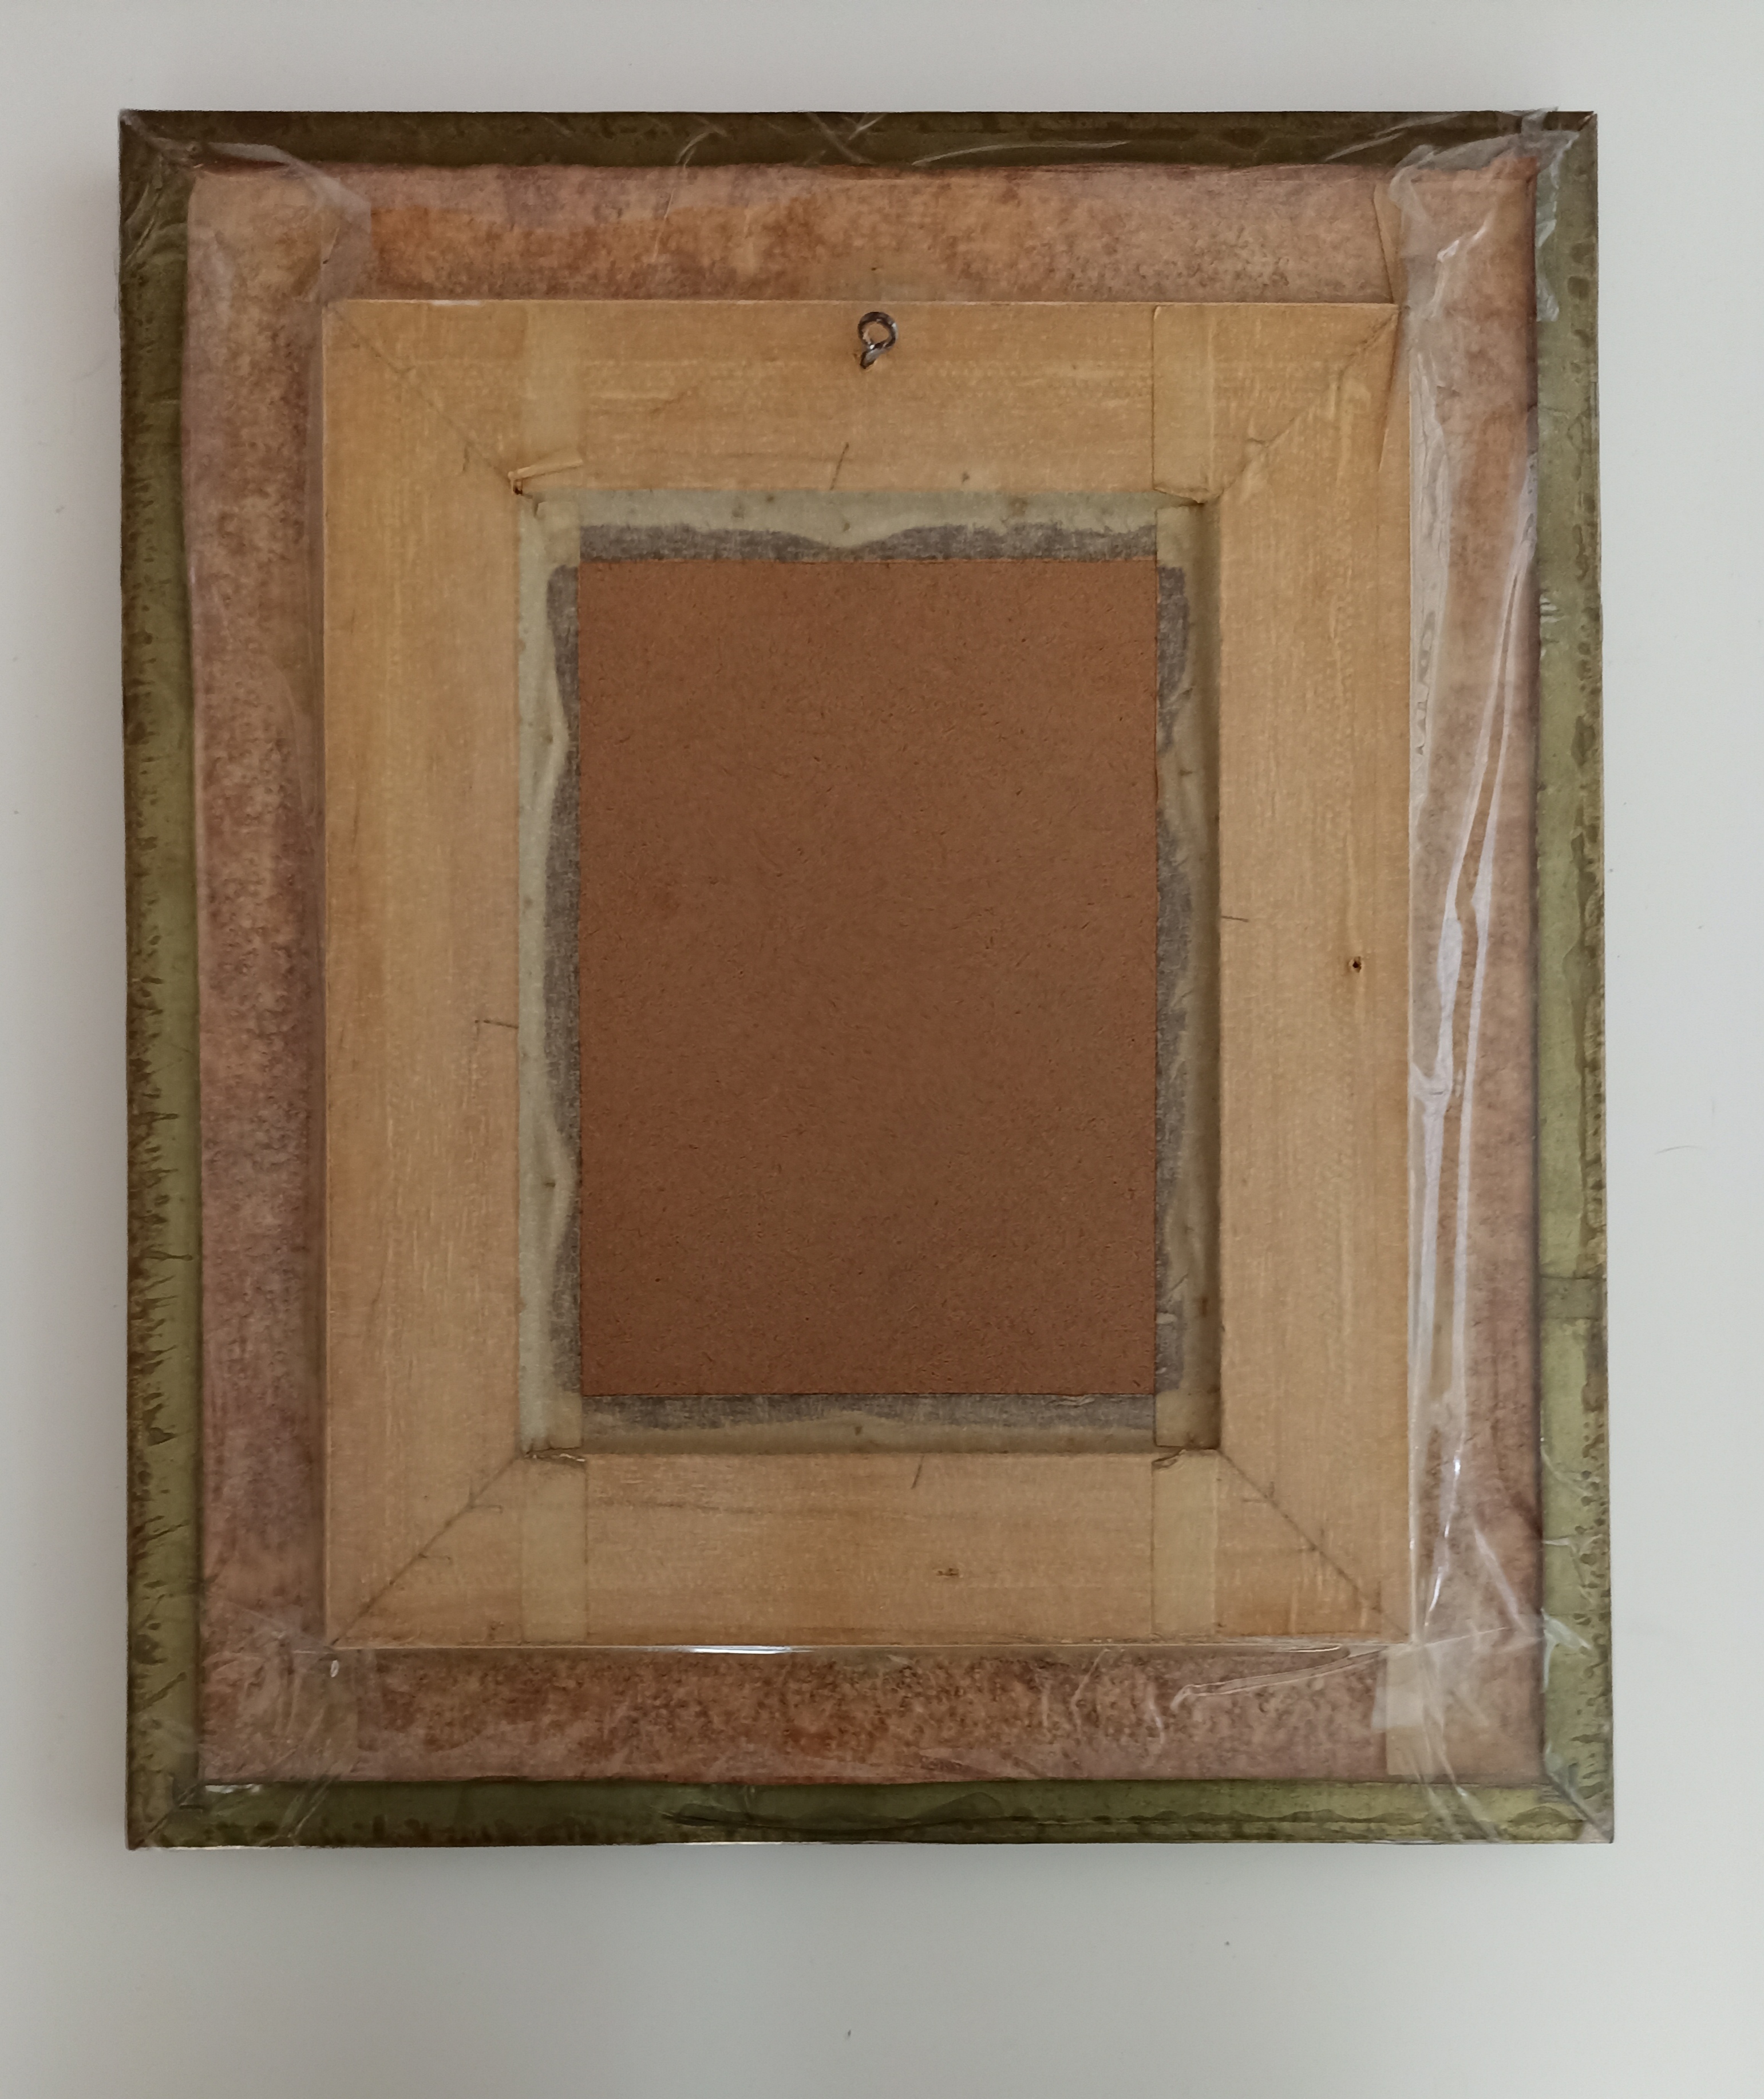 Bonito cuadro con marco de madera y cristal protector. 34,5x29,5 cm.